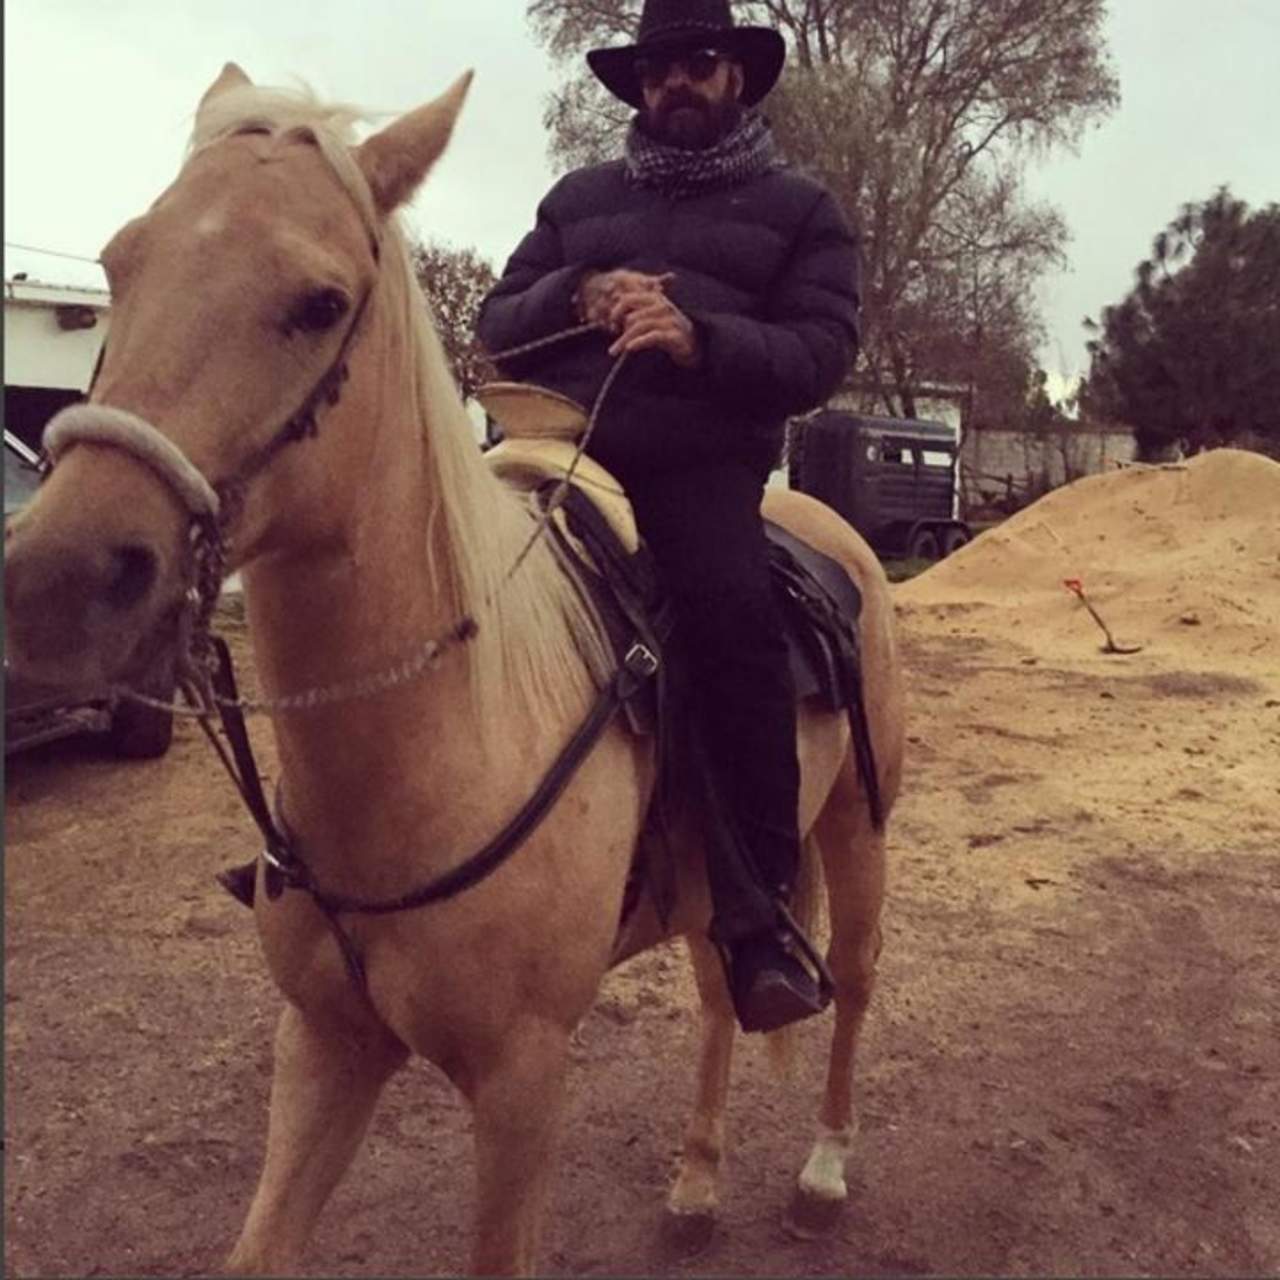 Recientemente el líder de la agrupación Eduardo Dávalos de Luna, mejor conocido como MC Babo, publicó una serie de fotografías en su Instagram montando a caballo que ya superan los 27 mil 'likes'. (INSTAGRAM)

